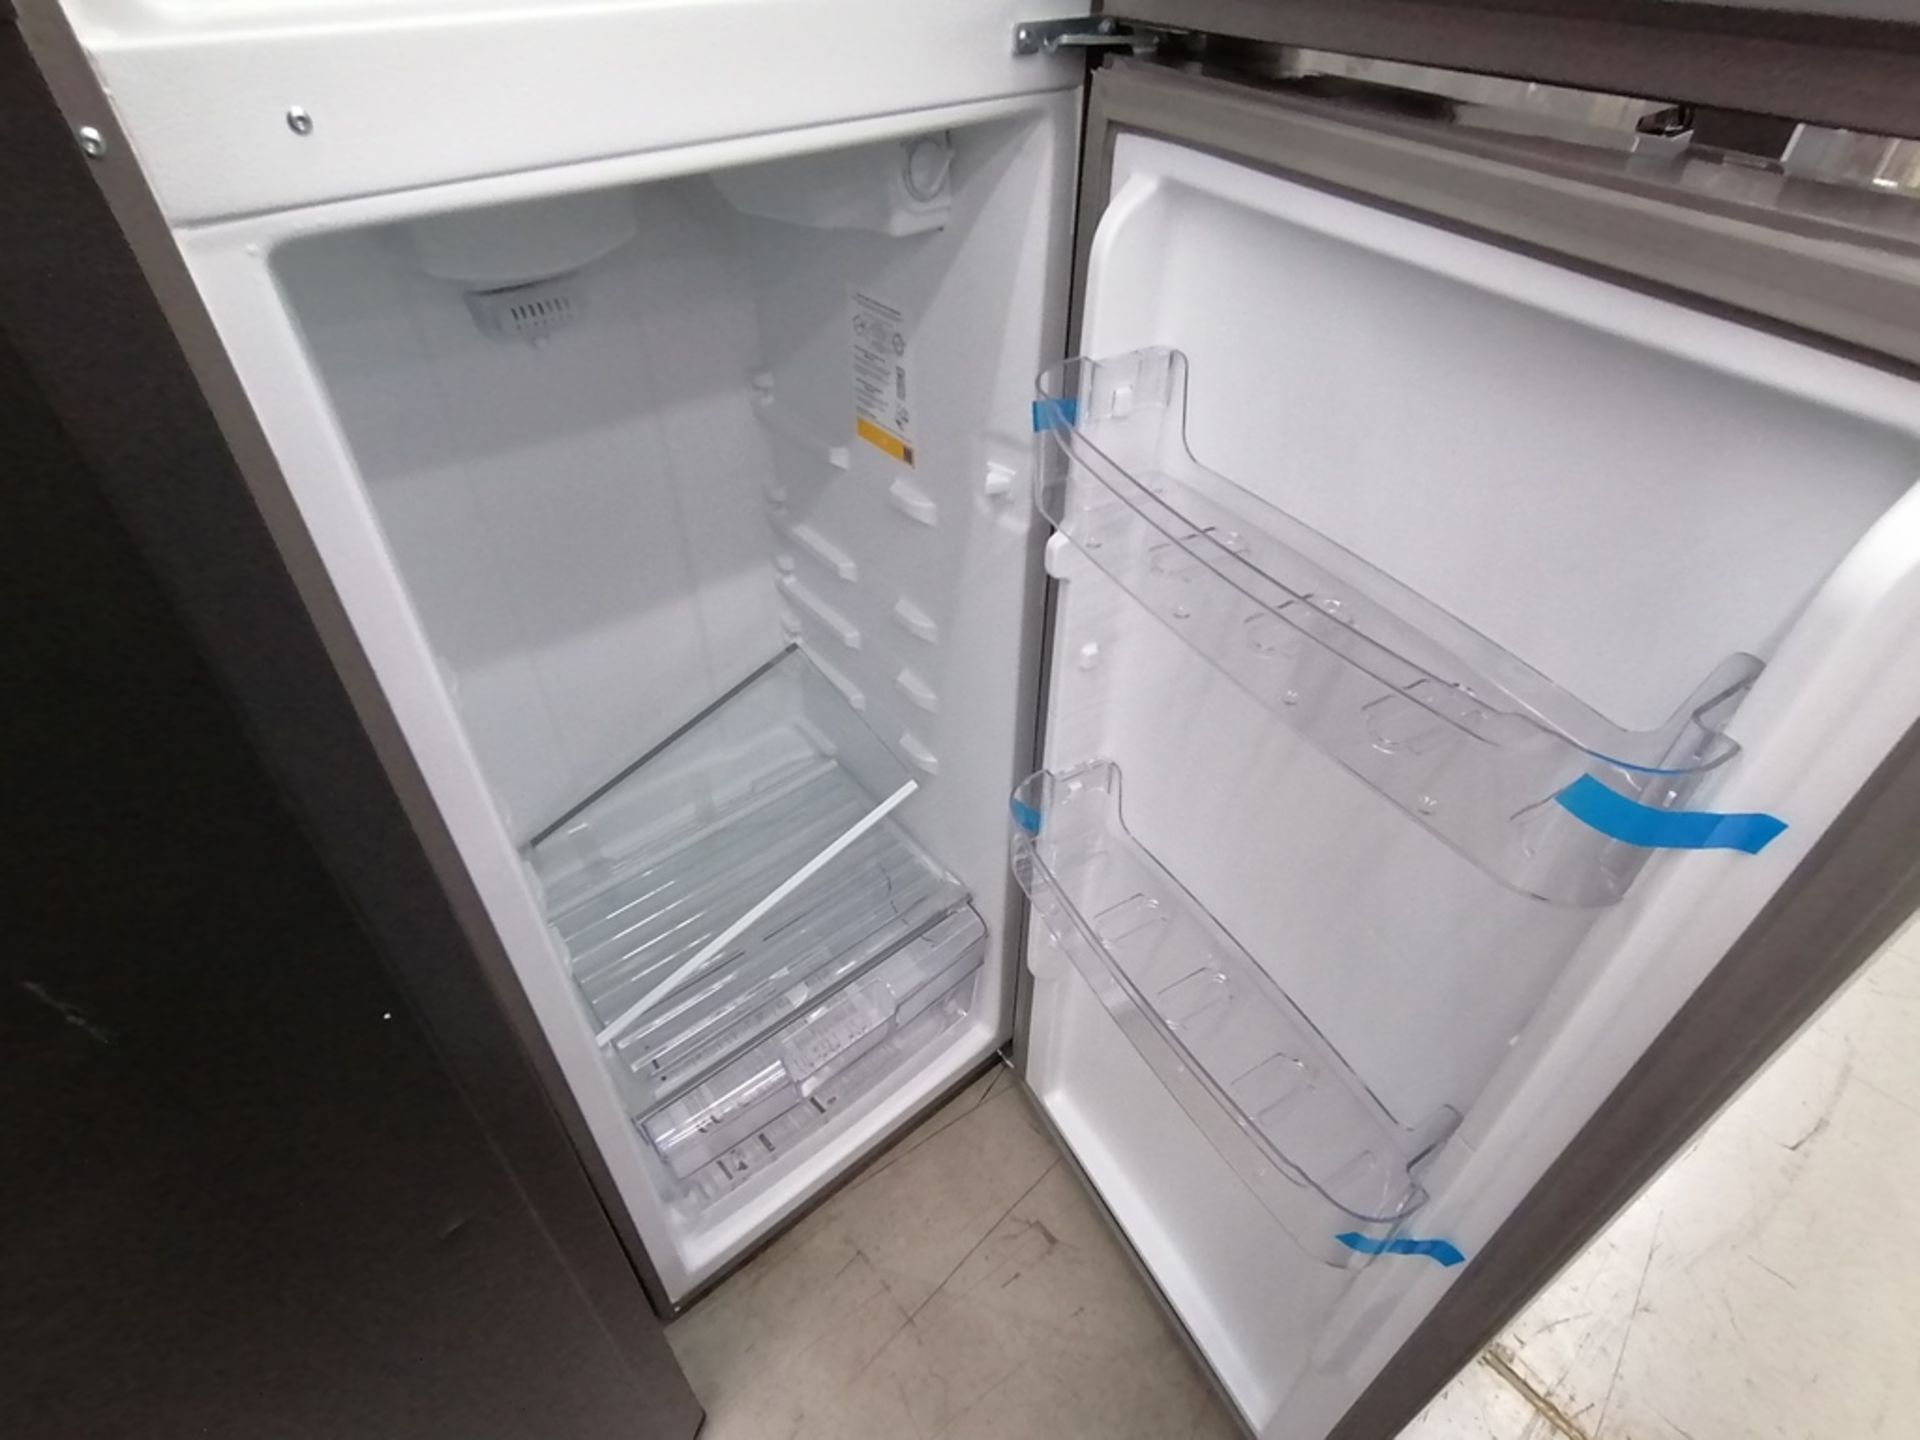 Lote de 2 refrigeradores incluye: 1 Refrigerador con dispensador de agua, Marca Mabe, Modelo RMA300 - Image 14 of 15